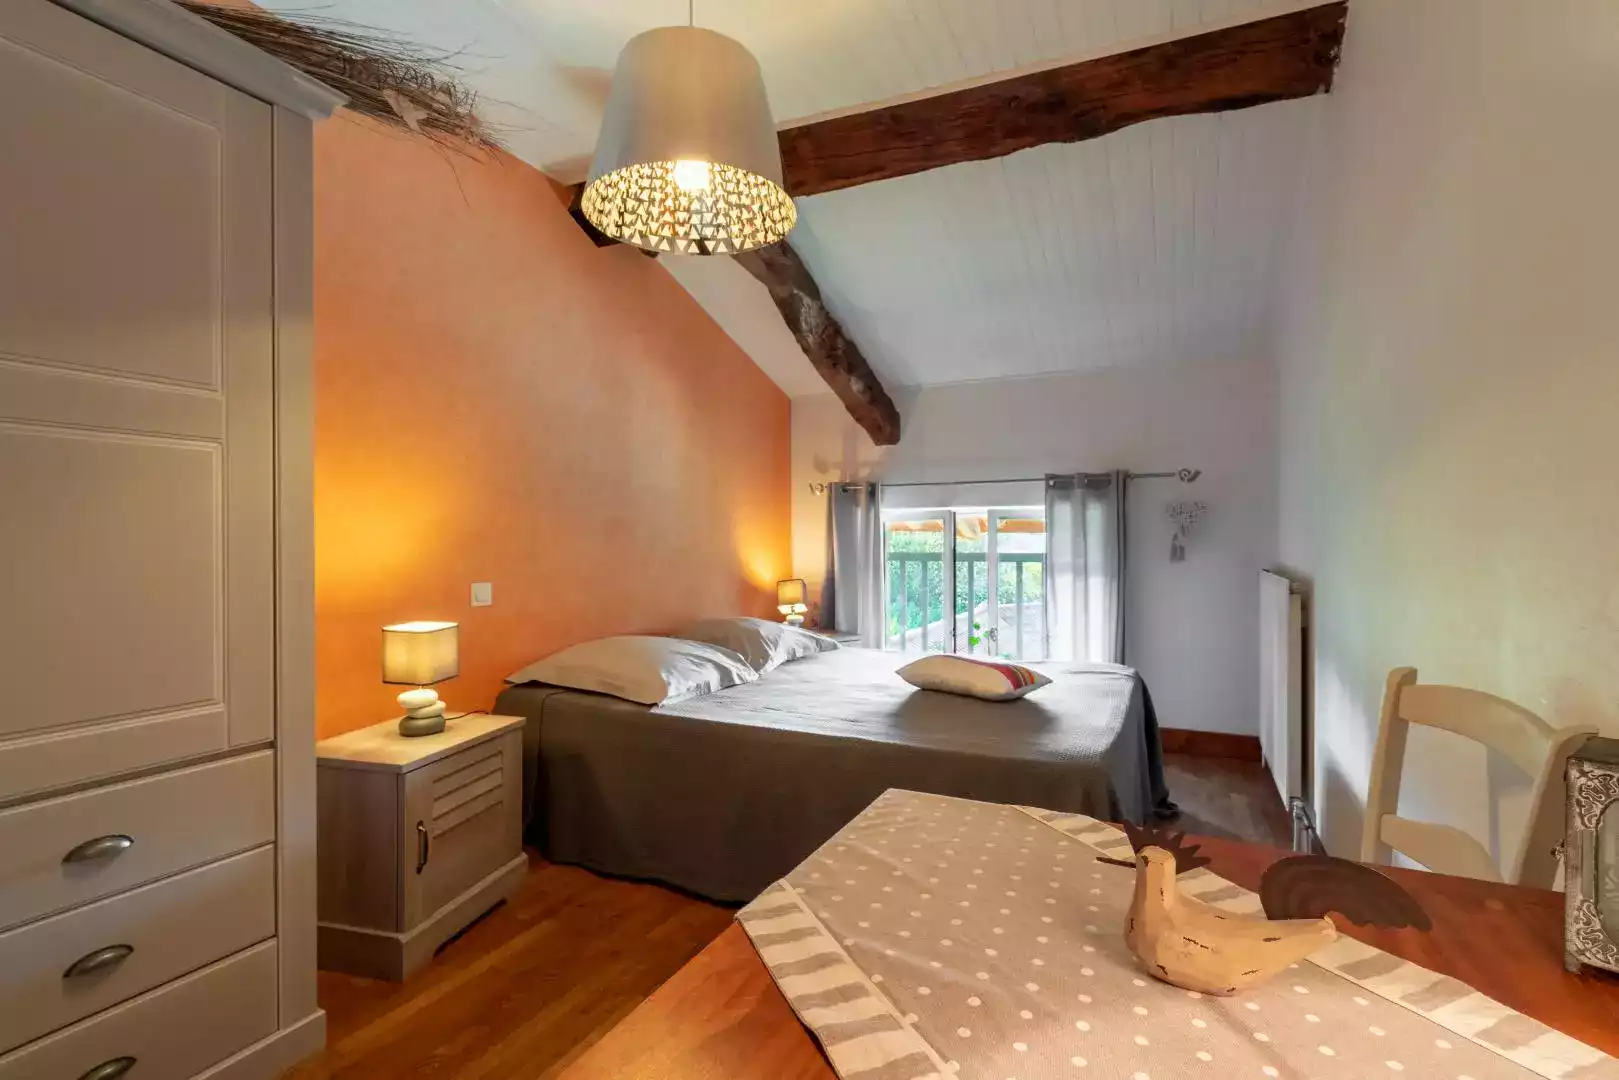 Chambre douillette avec linge de lit gris, poutres apparentes et lumière tamisée, offrant une atmosphère chaleureuse à L'agnoblens.